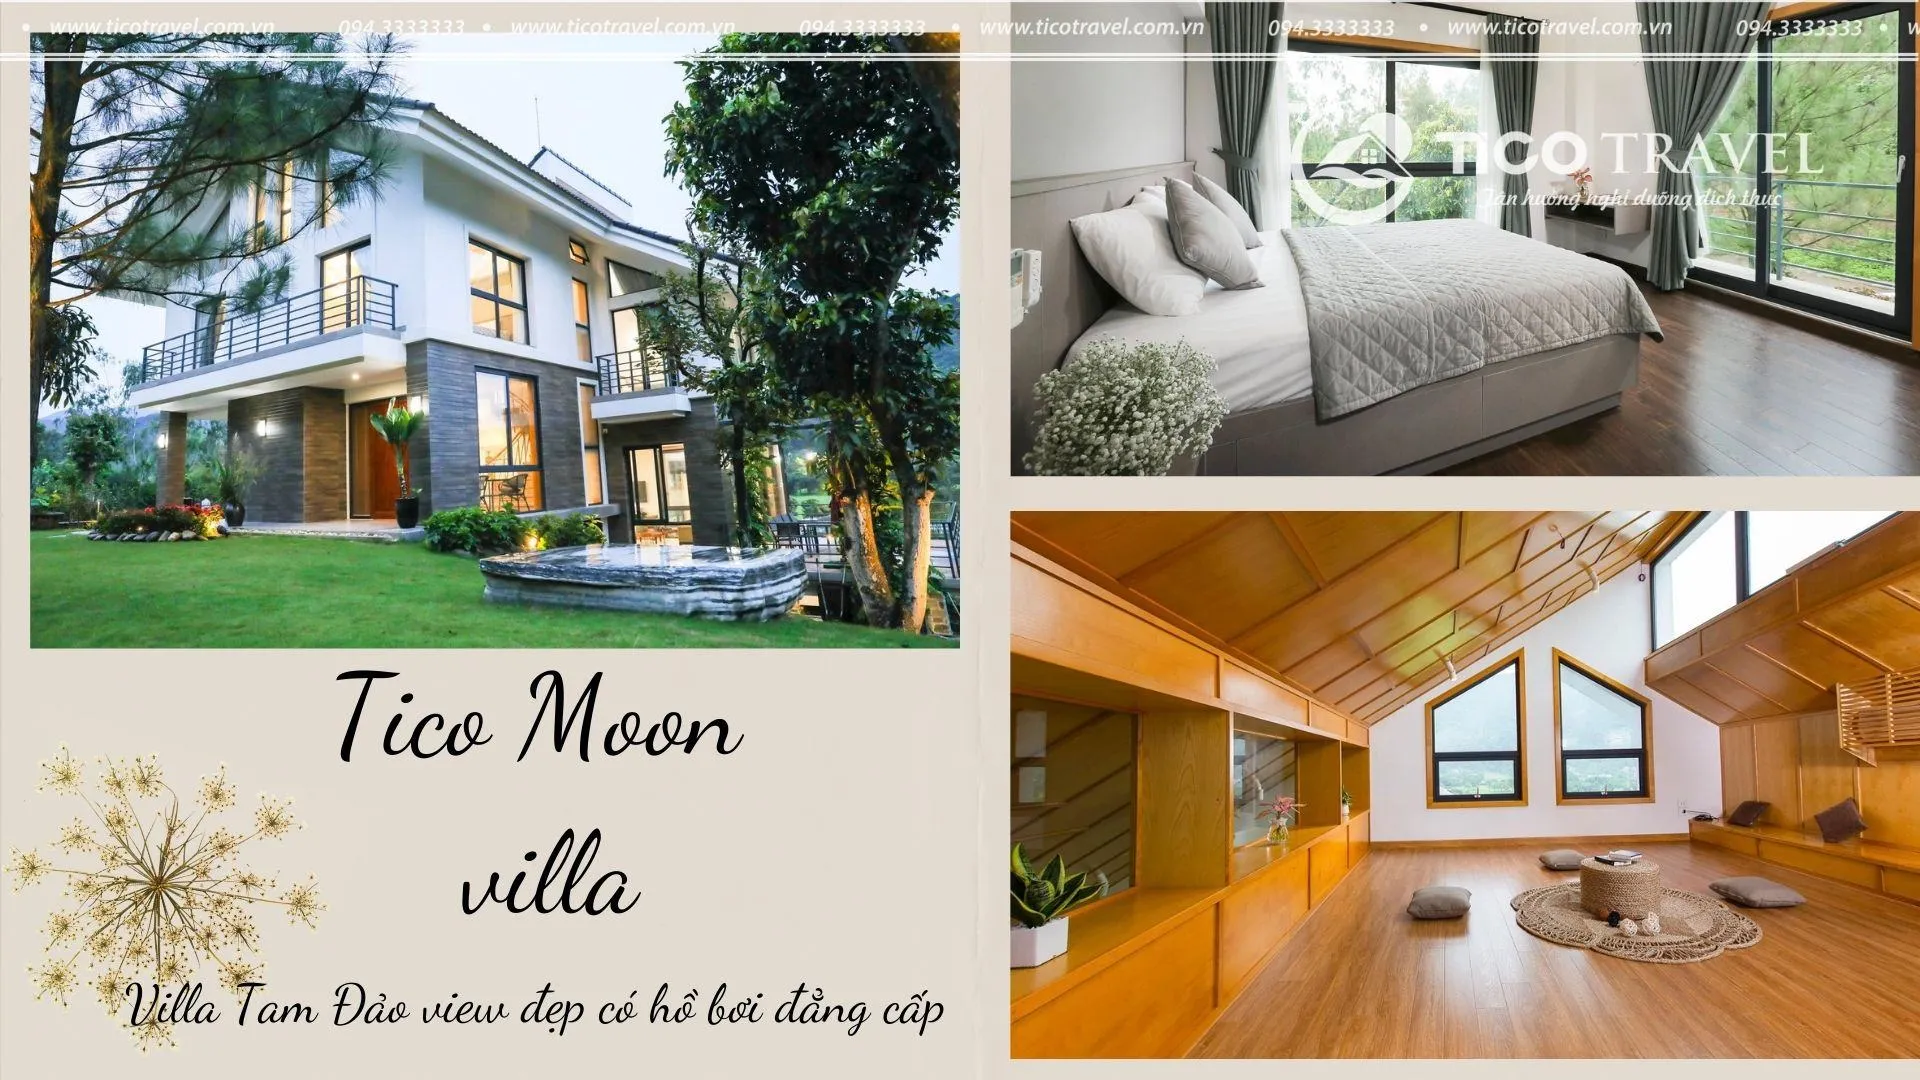 Tico 03 -  Moon villa gần Hà Nội